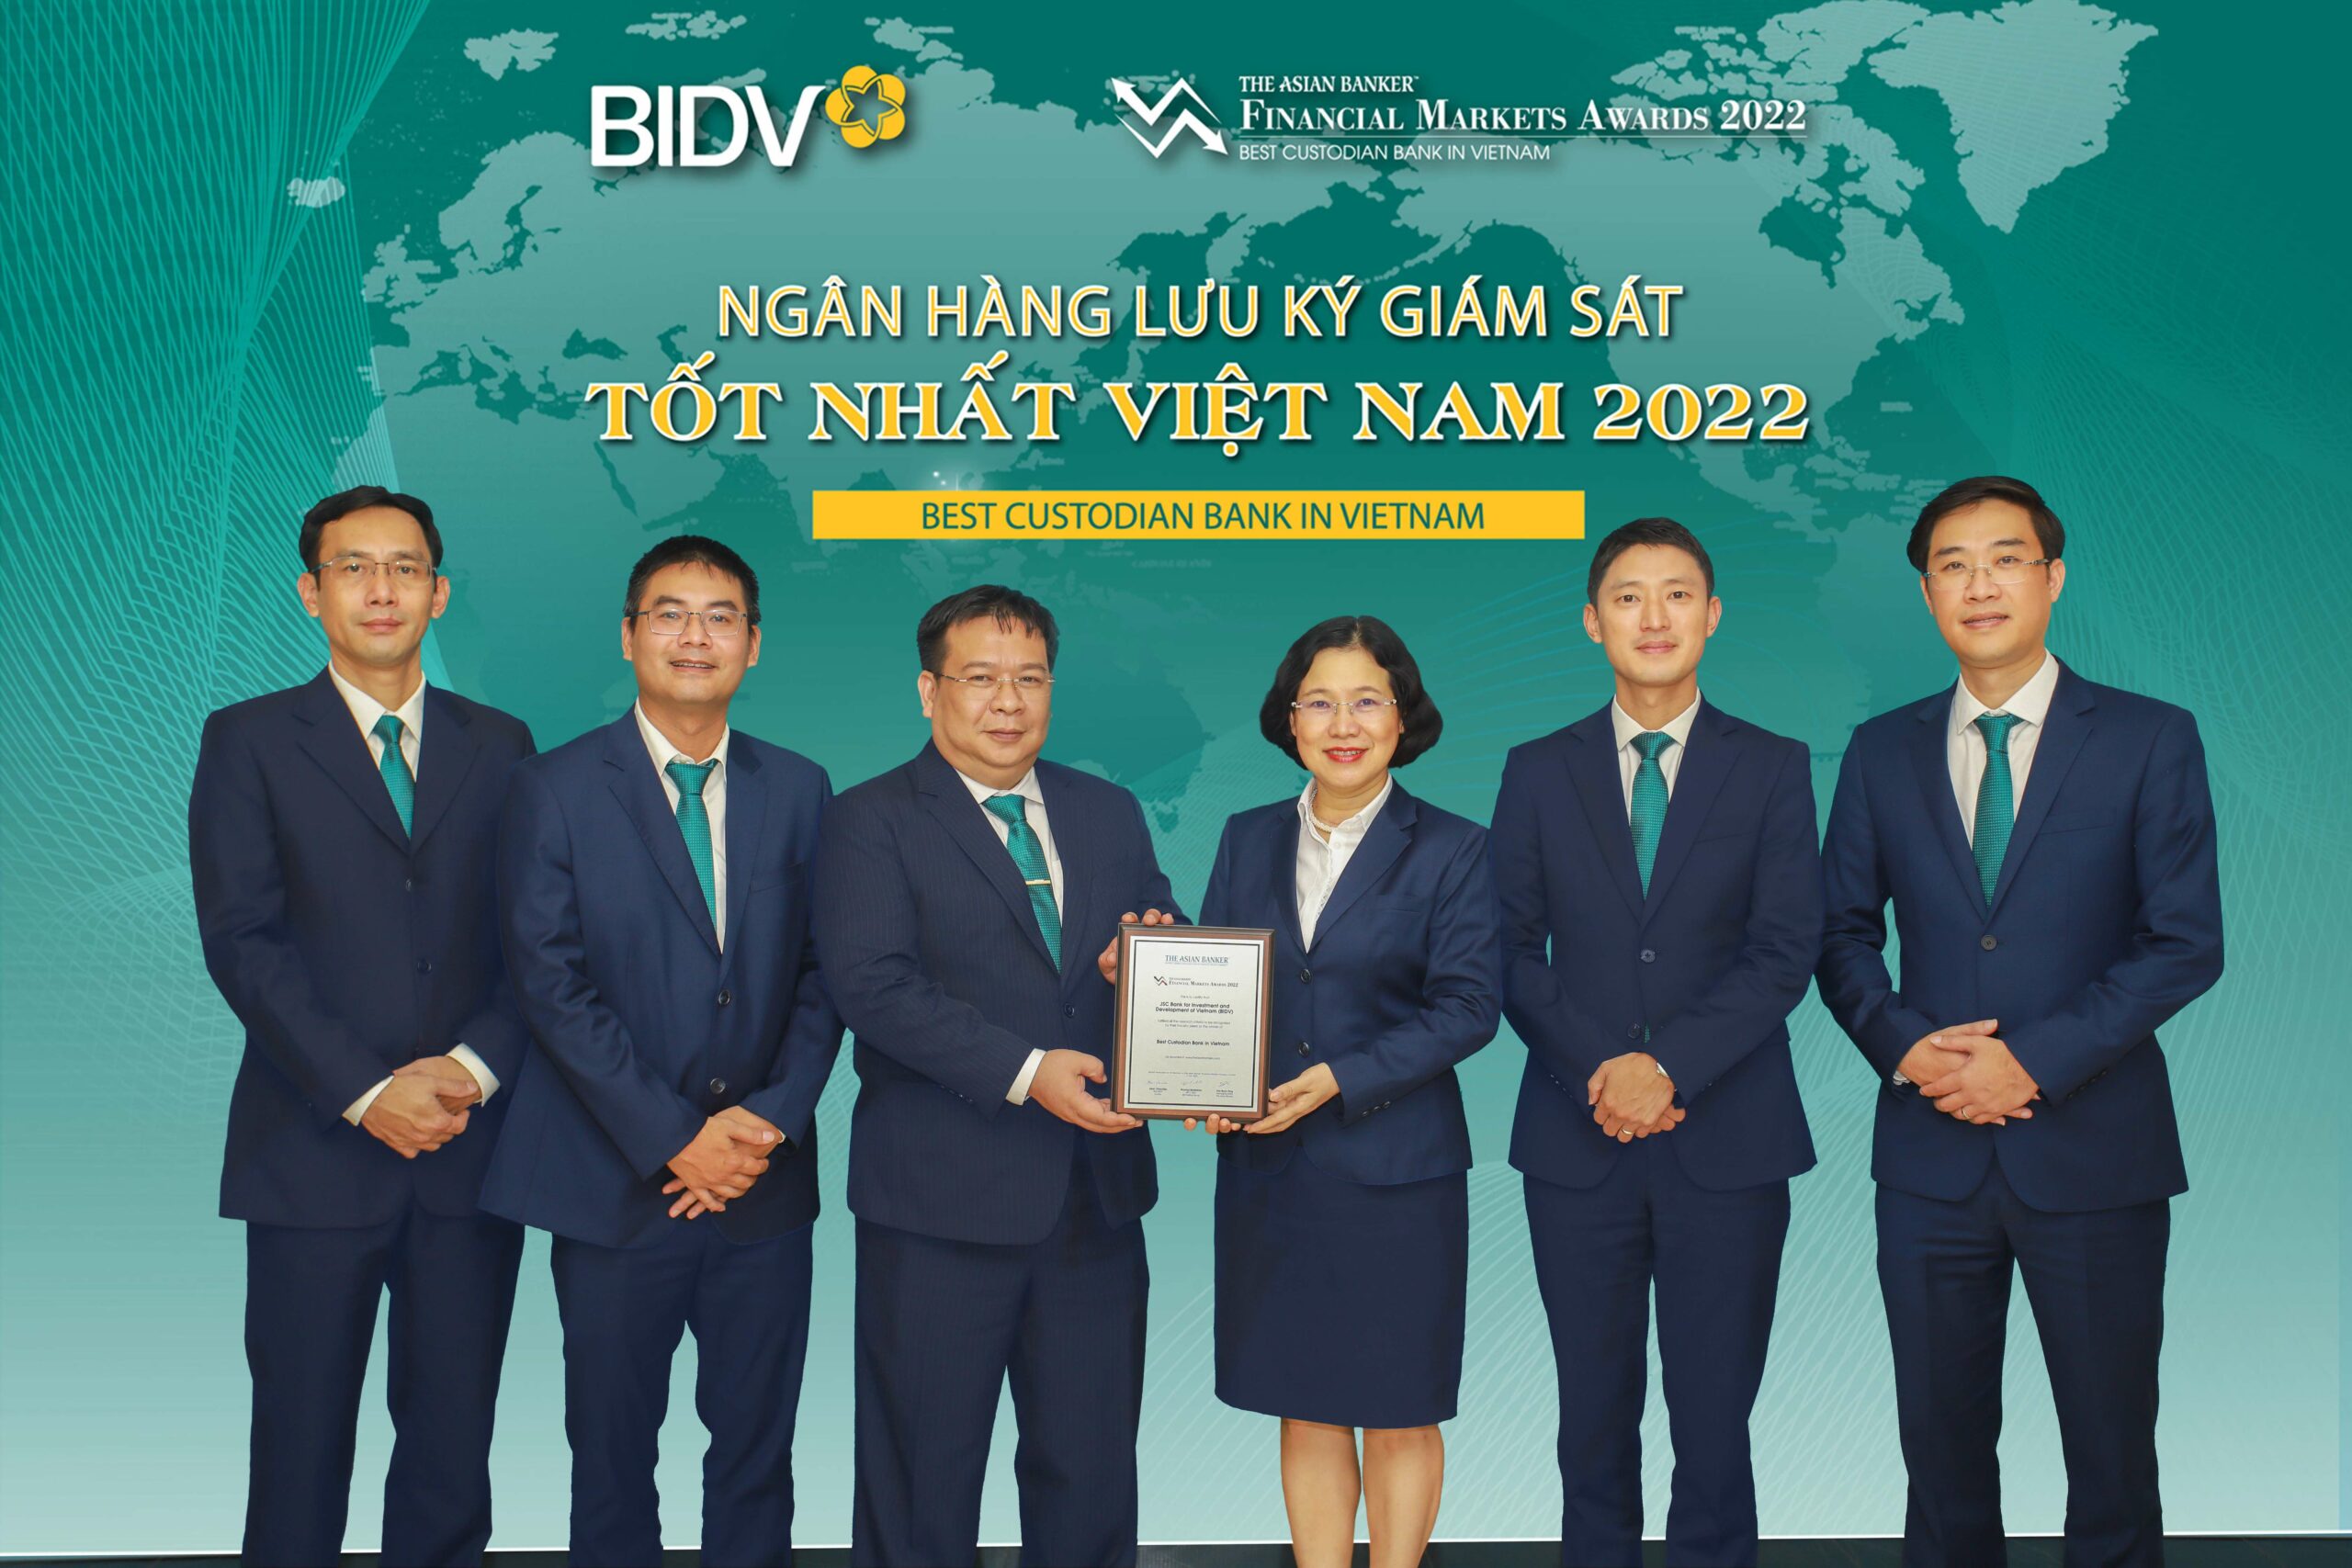 Ngân hàng BIDV vinh dự nhận các giải thưởng